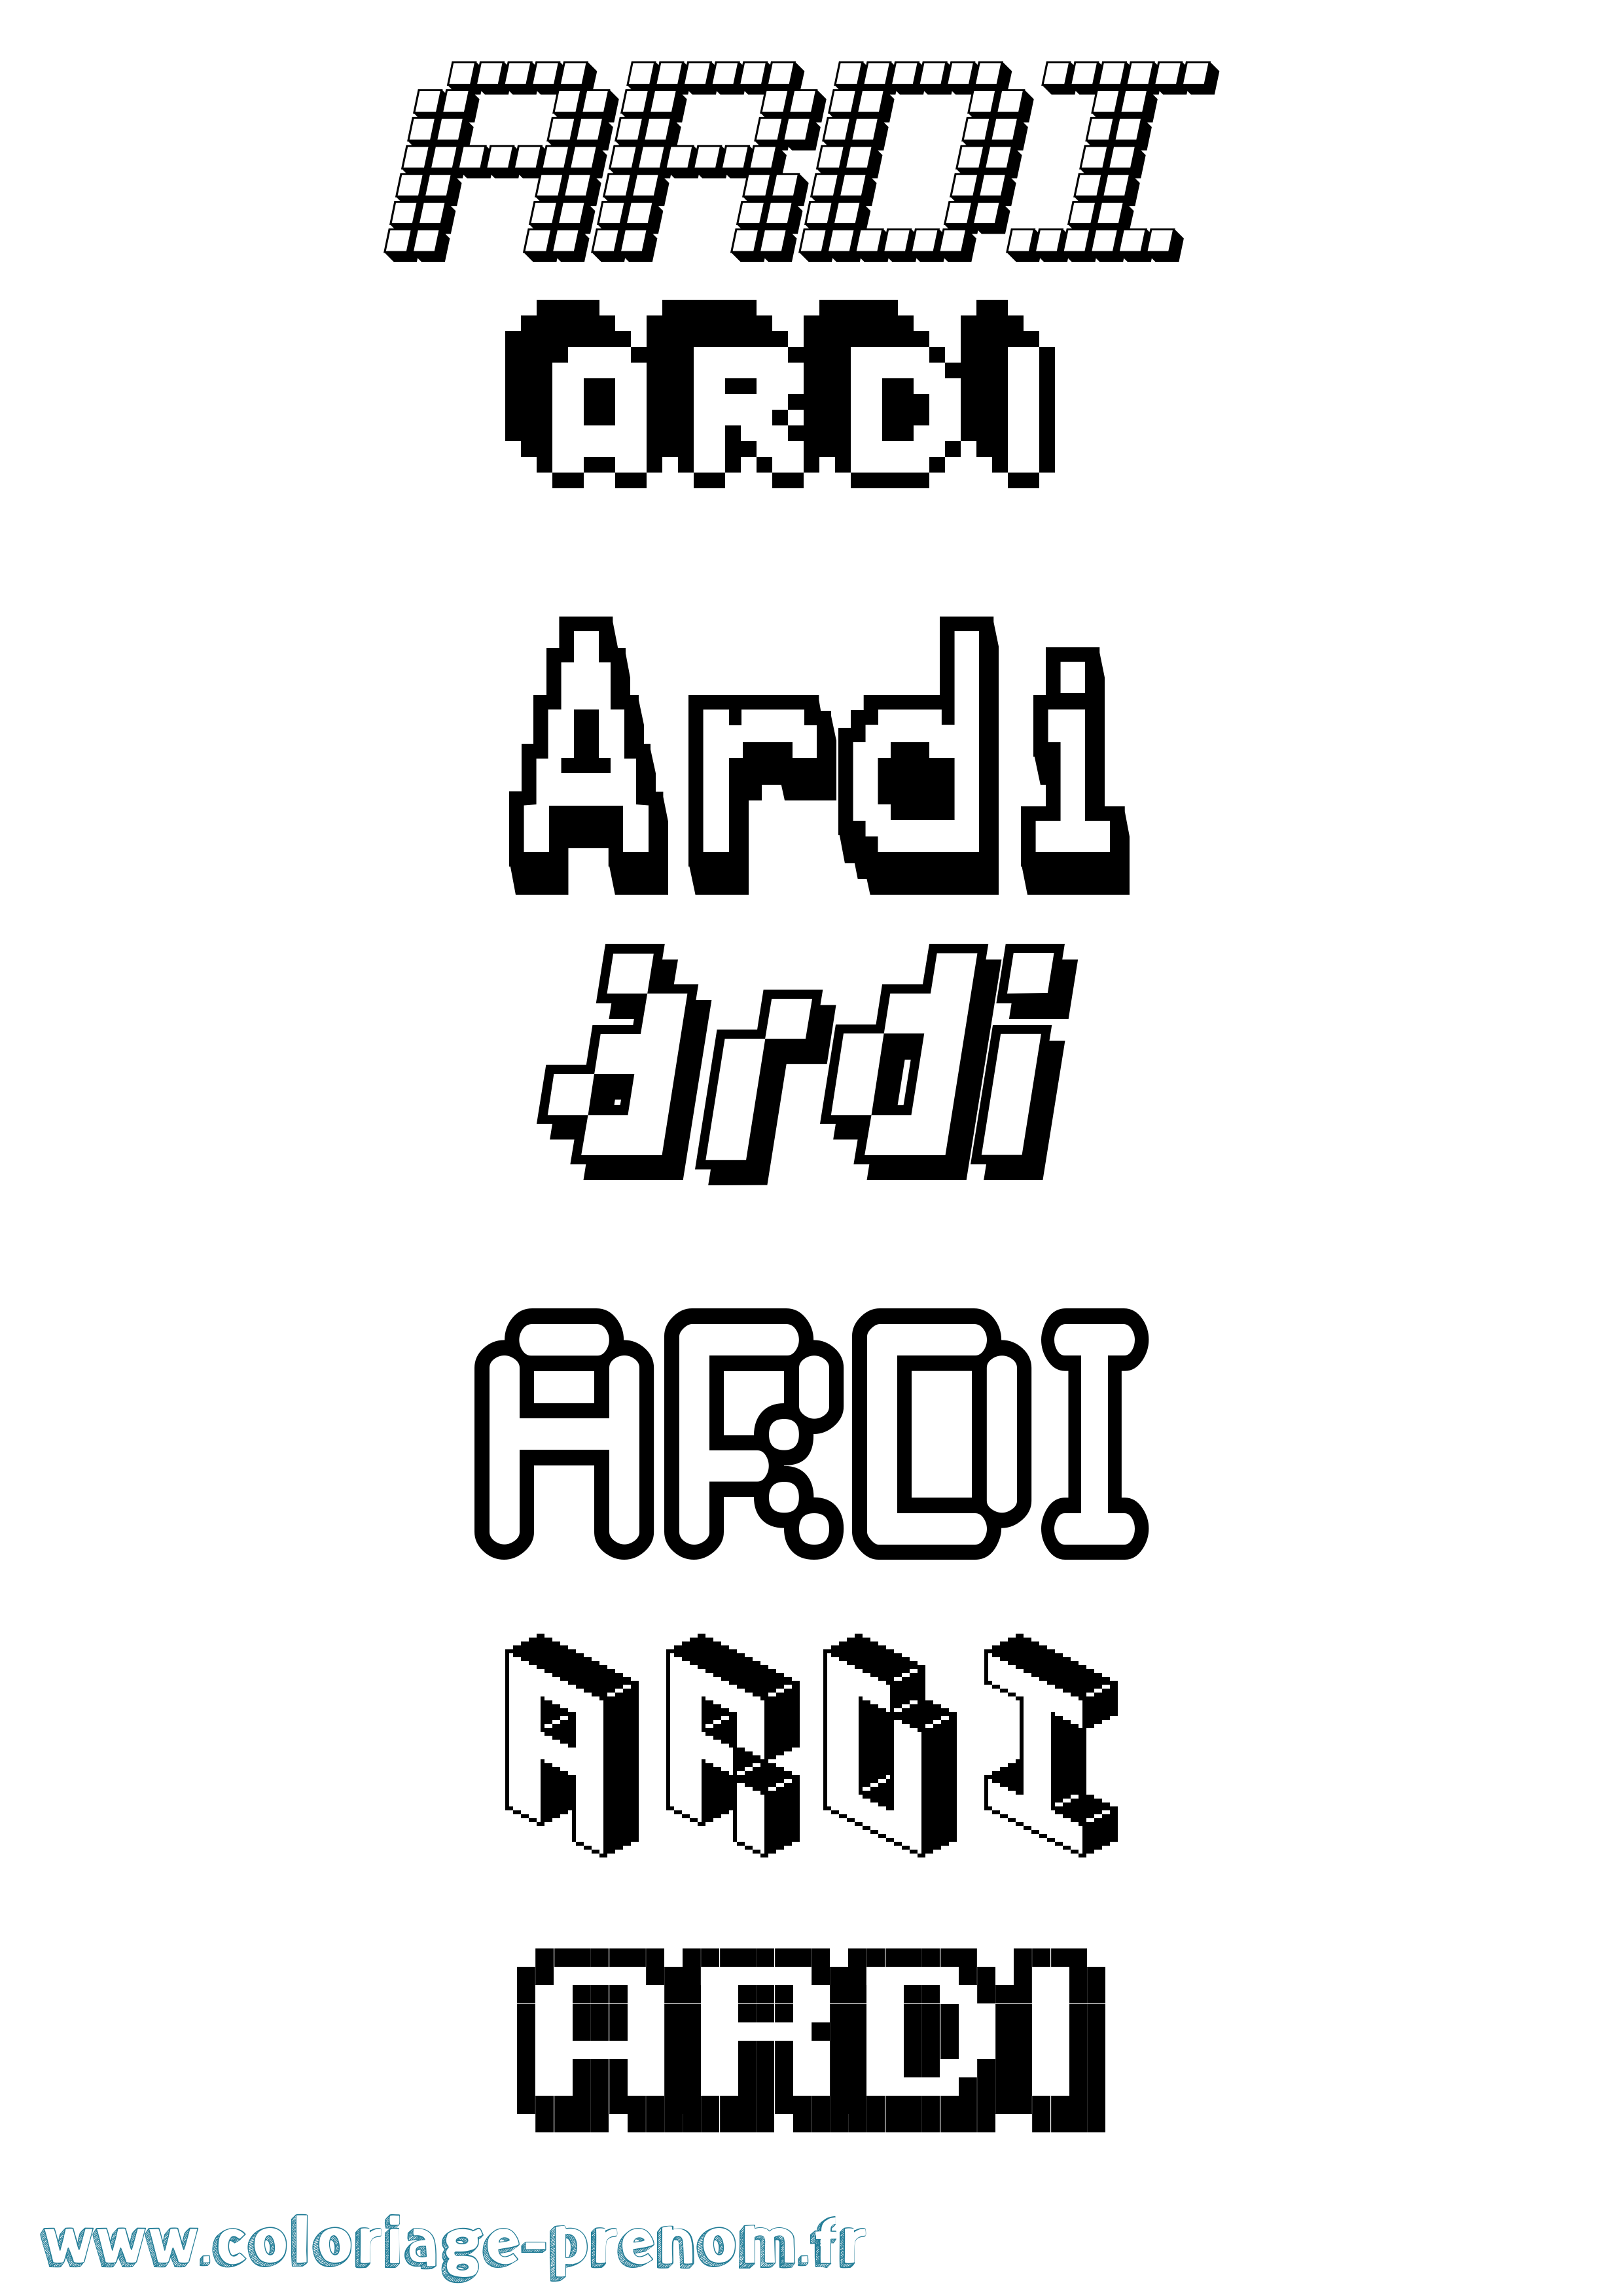 Coloriage prénom Ardi Pixel